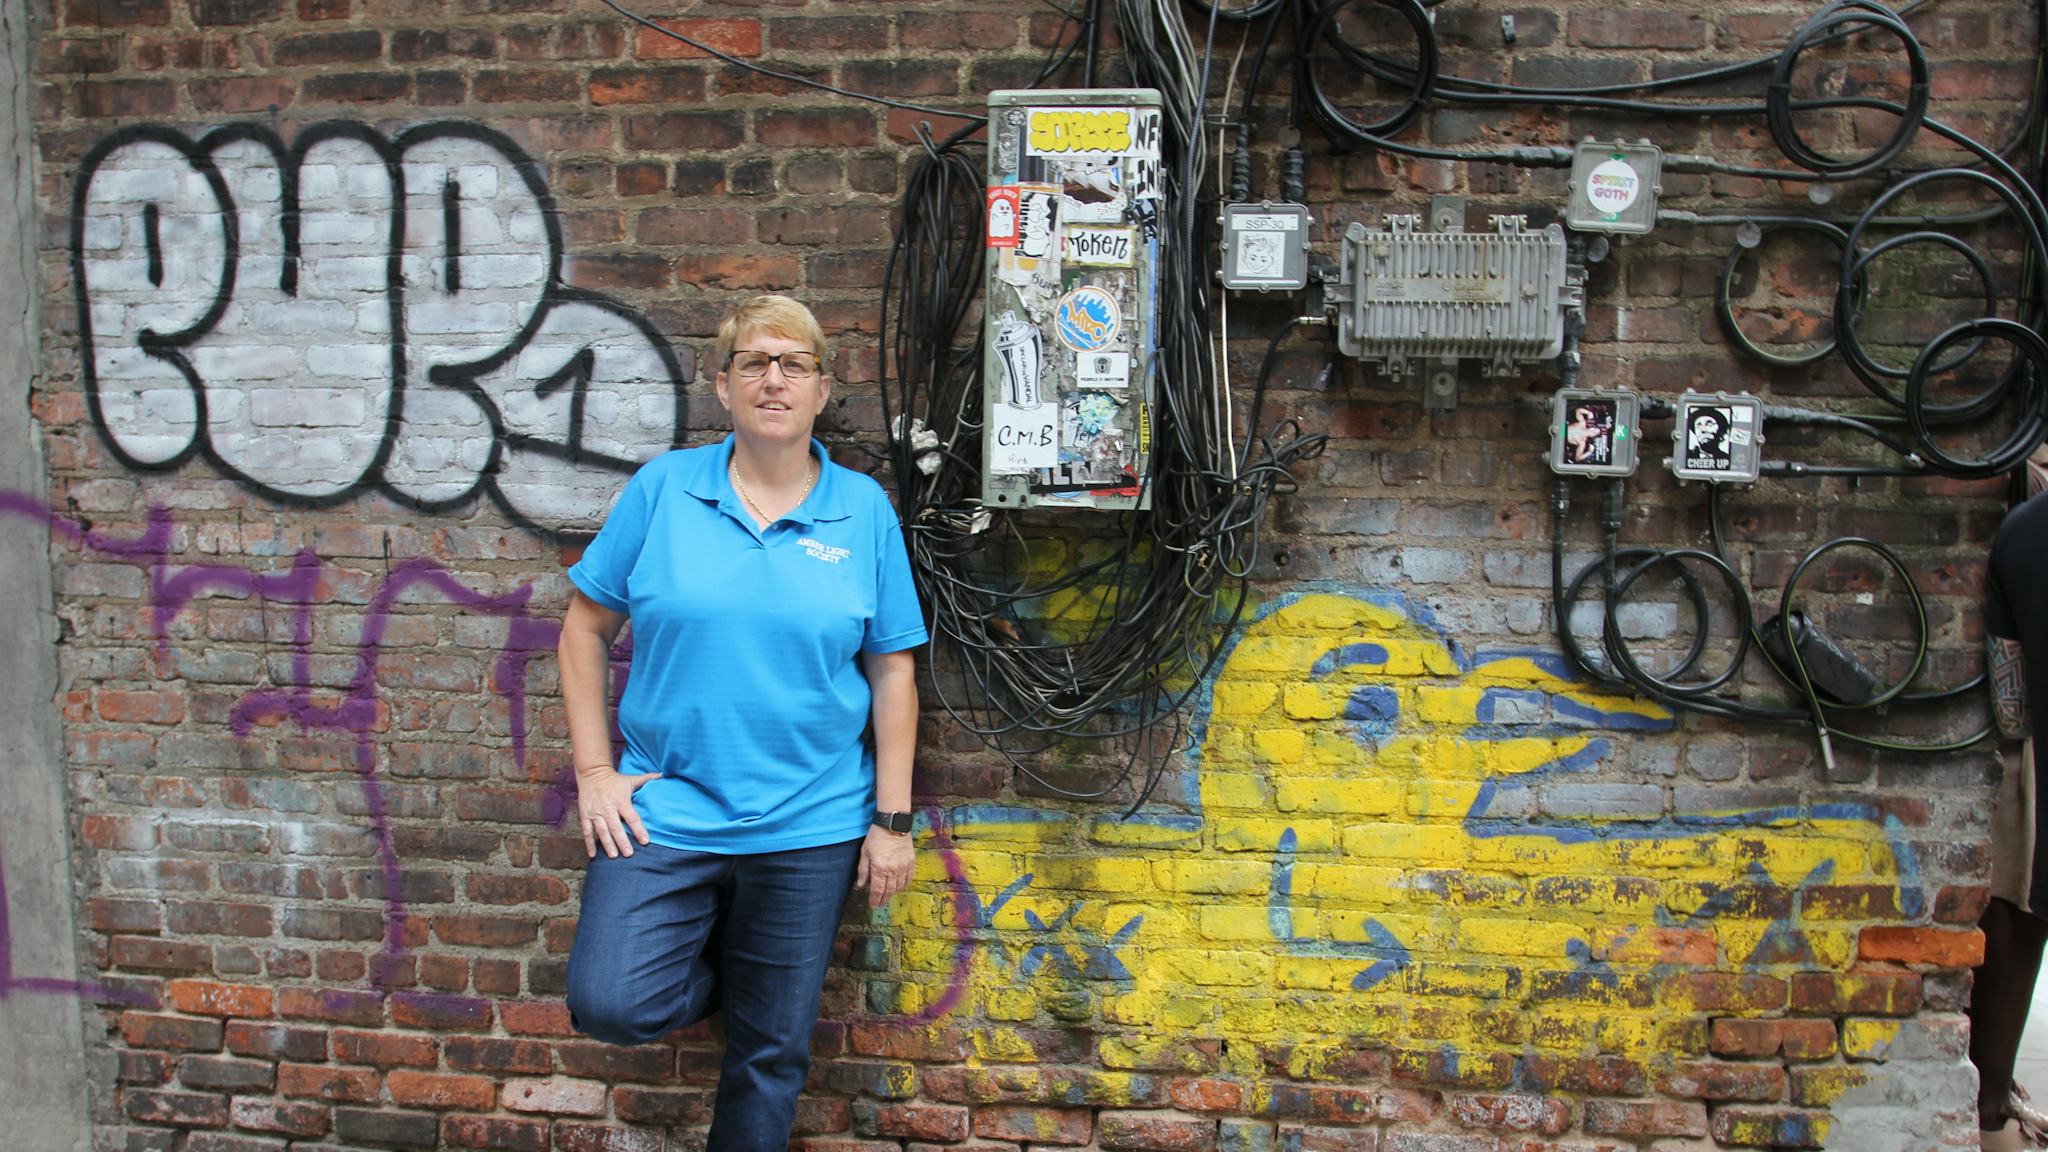 Erin står lutad mot en tegelvägg ful av graffiti, klädd i blå t-shirt.